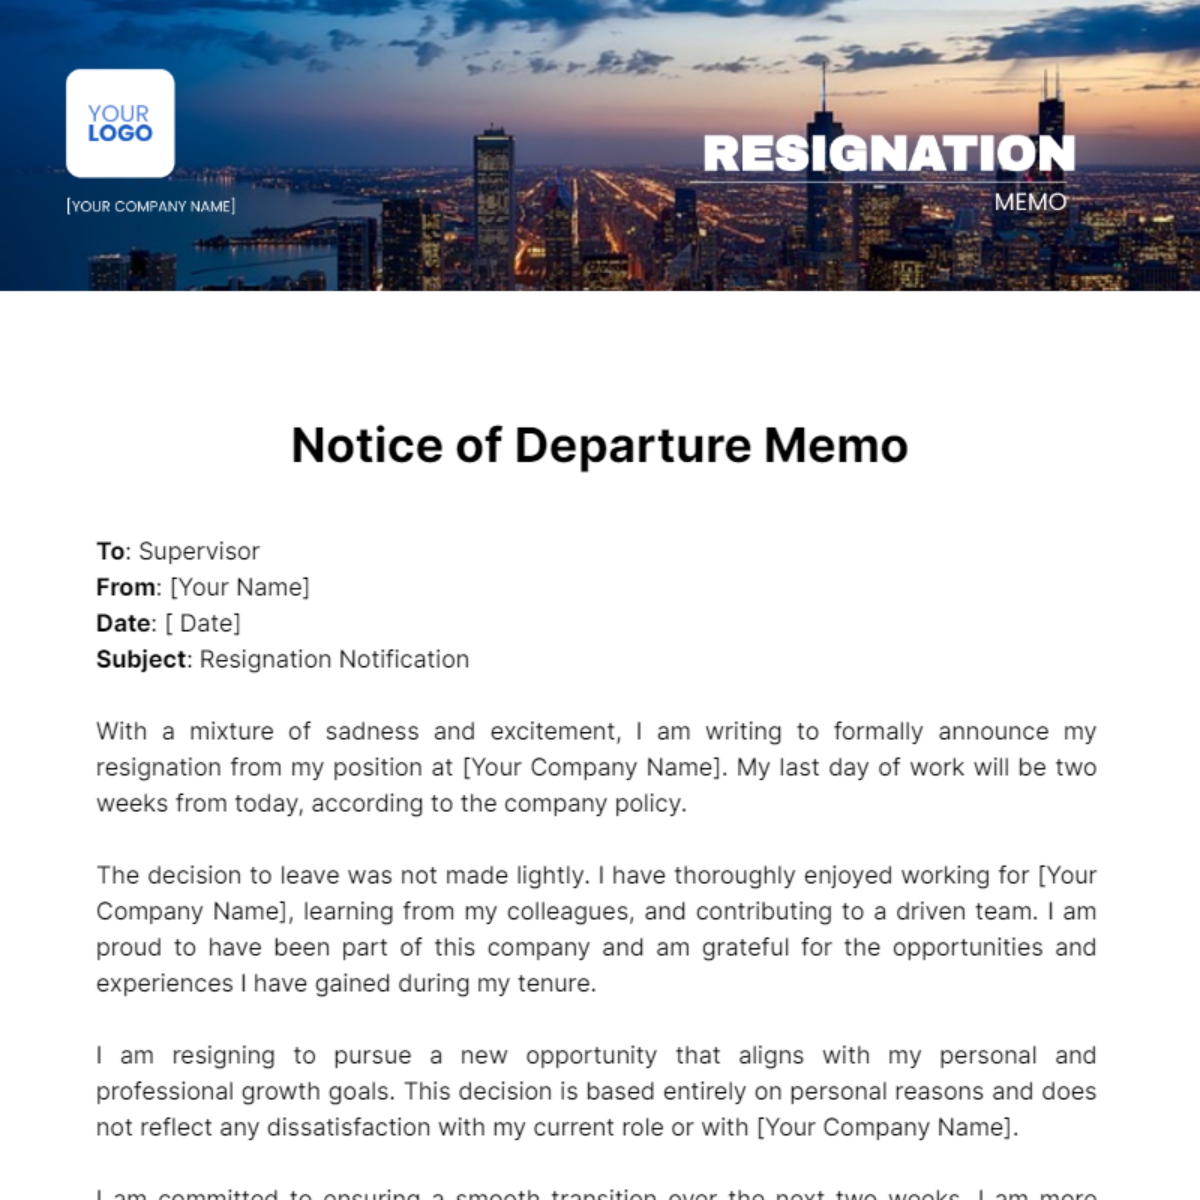 Resignation Memo Template